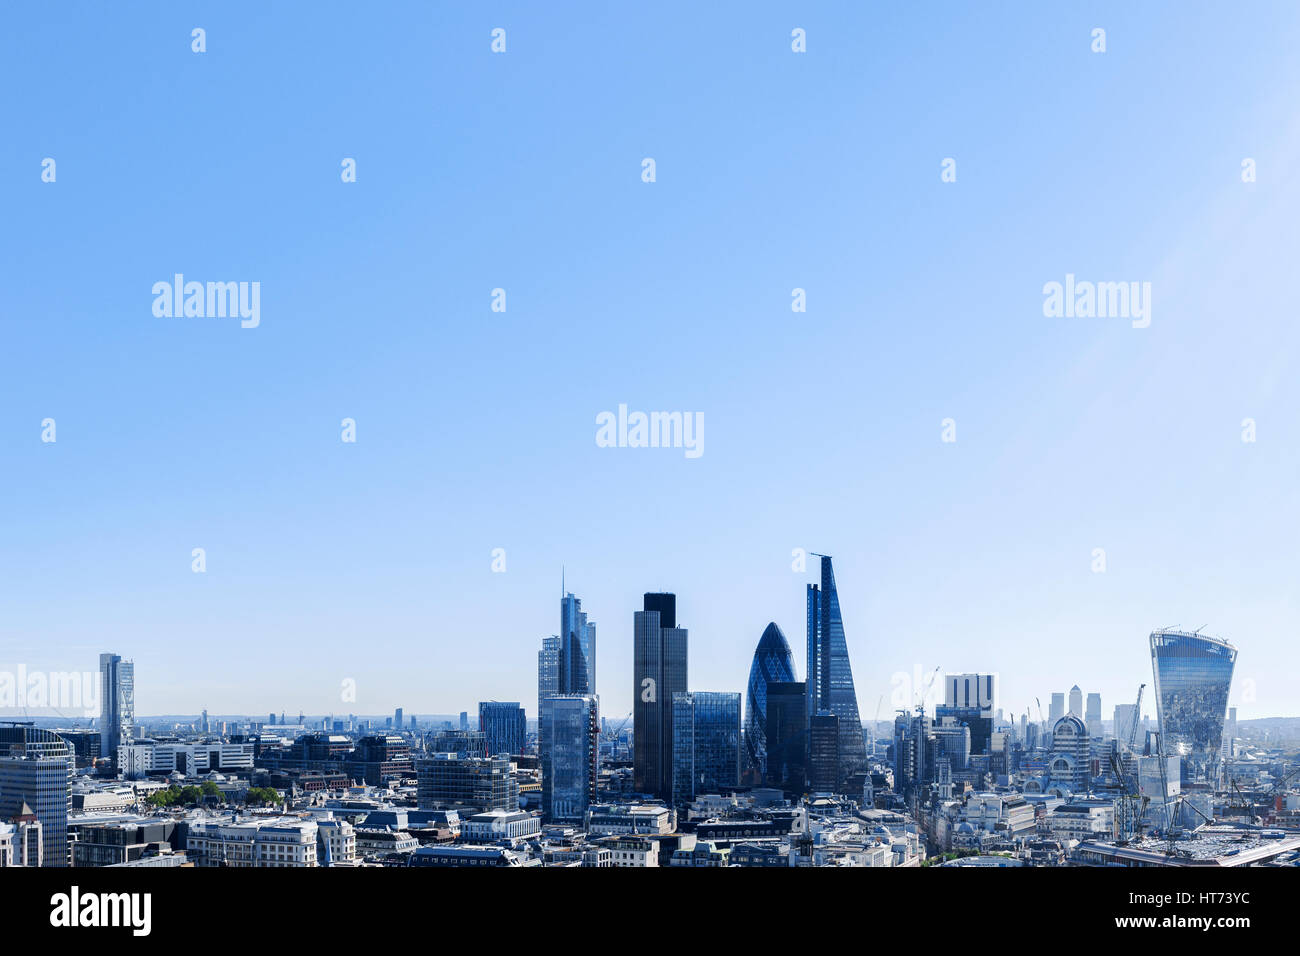 Le quartier financier de Londres d'en haut avec vue sur les gratte-ciel modernes et Canary Wharf, sur une bonne journée ensoleillée, Londres UK Banque D'Images